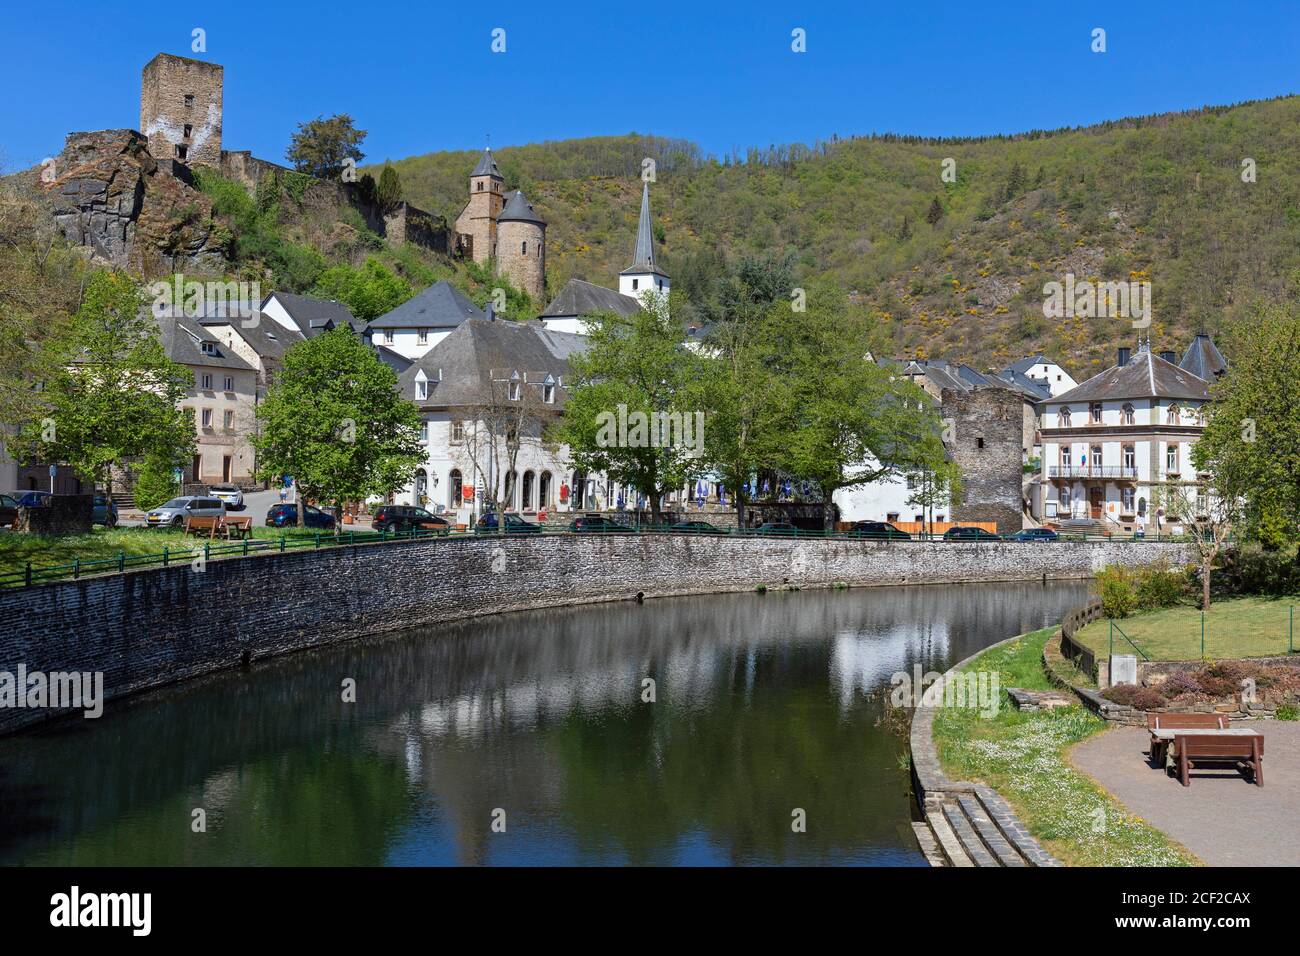 Europe, Luxembourg, Diekirch, Esch-sur-Sûre, vue sur la rivière Sûre et le centre du village. Banque D'Images